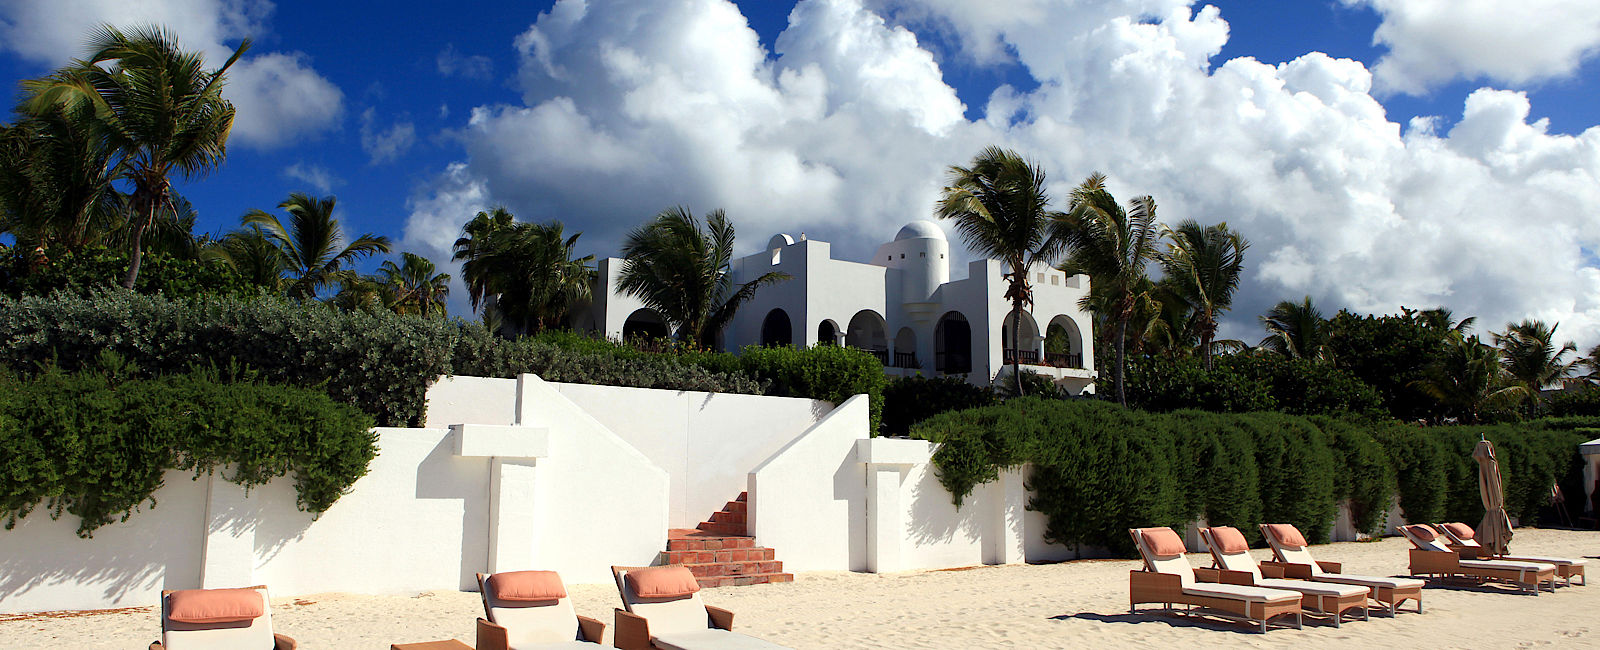 HOTEL TIPPS
 Cap Juluca 
 Exquisites Romantikhotel in der Karibik 